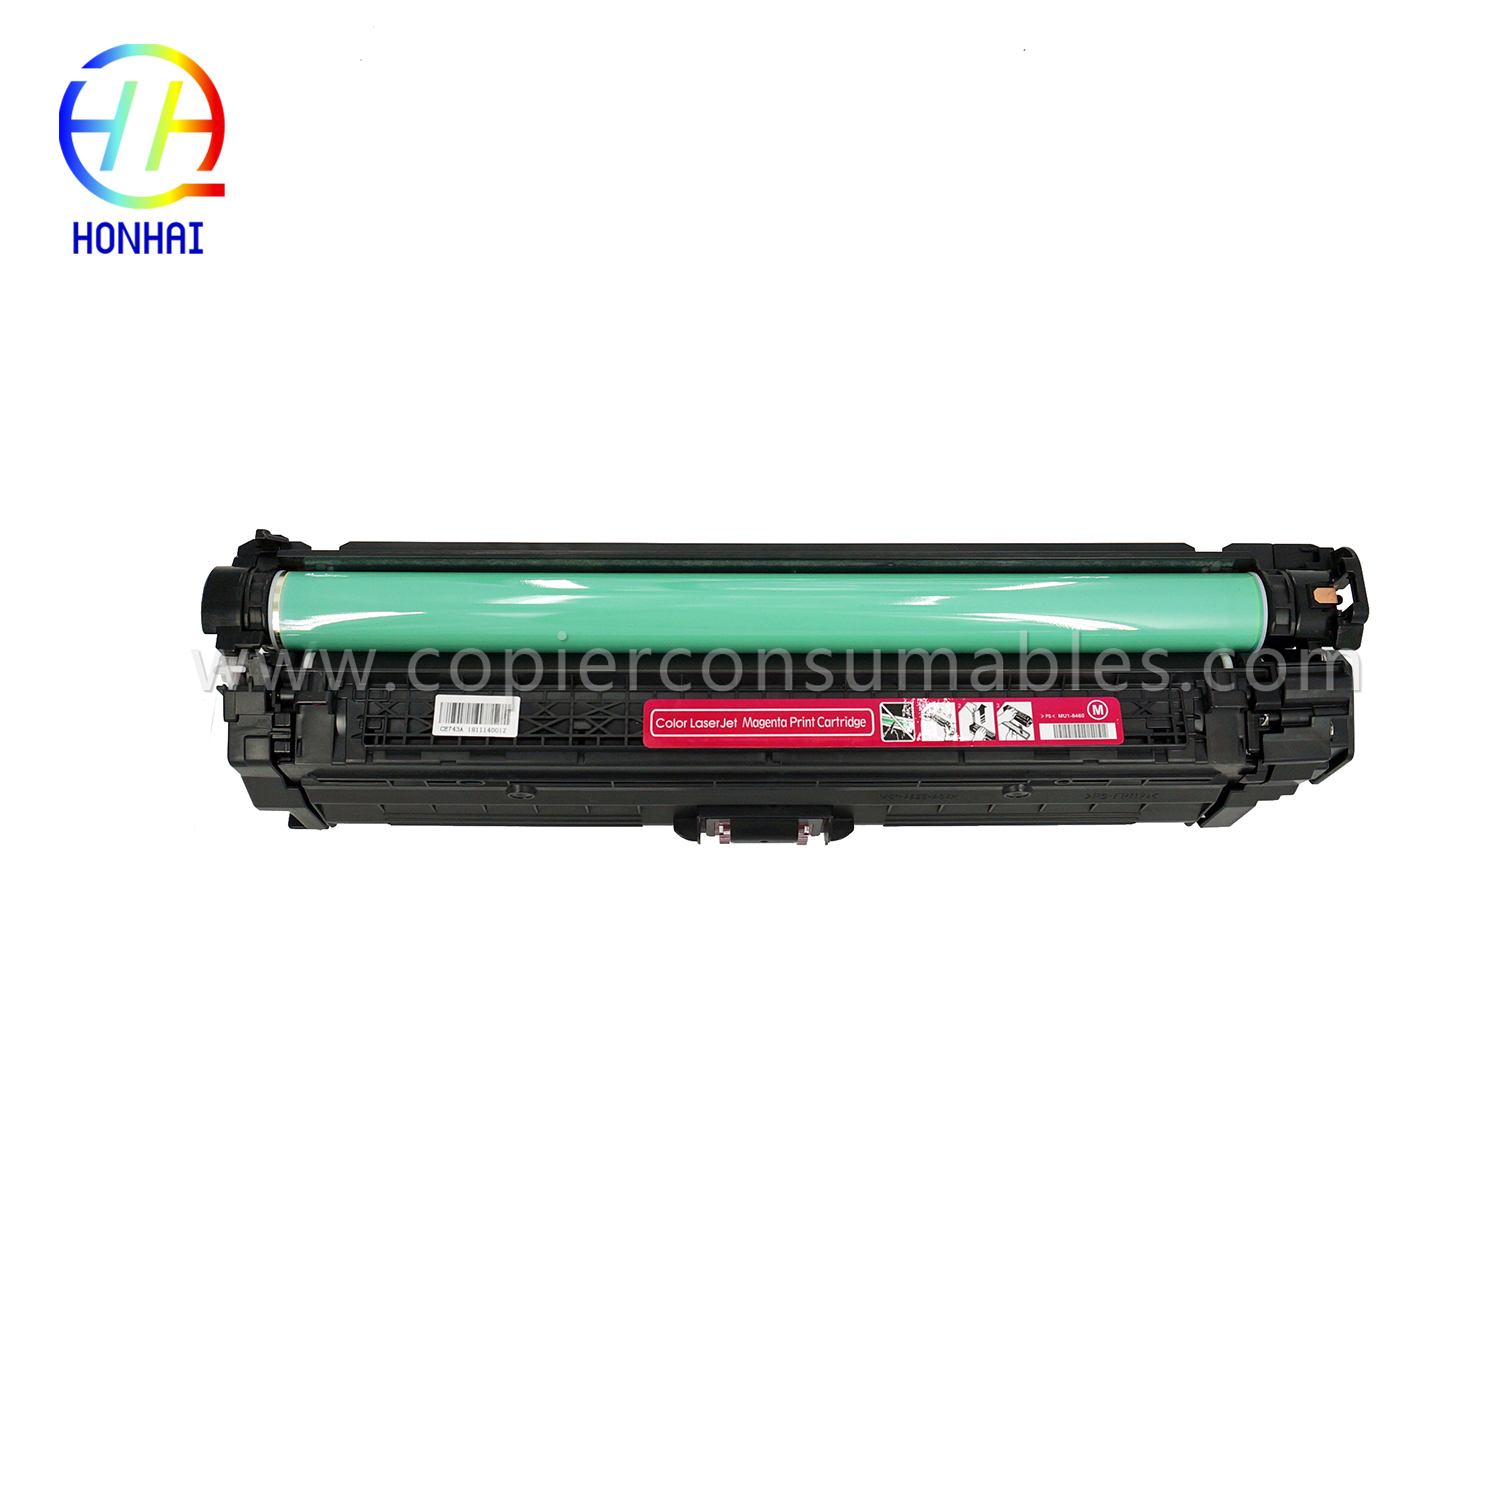 Cartucho de tóner para HP Color LaserJet Pro CP5025 CP5220 CP5225 CE743A 307A